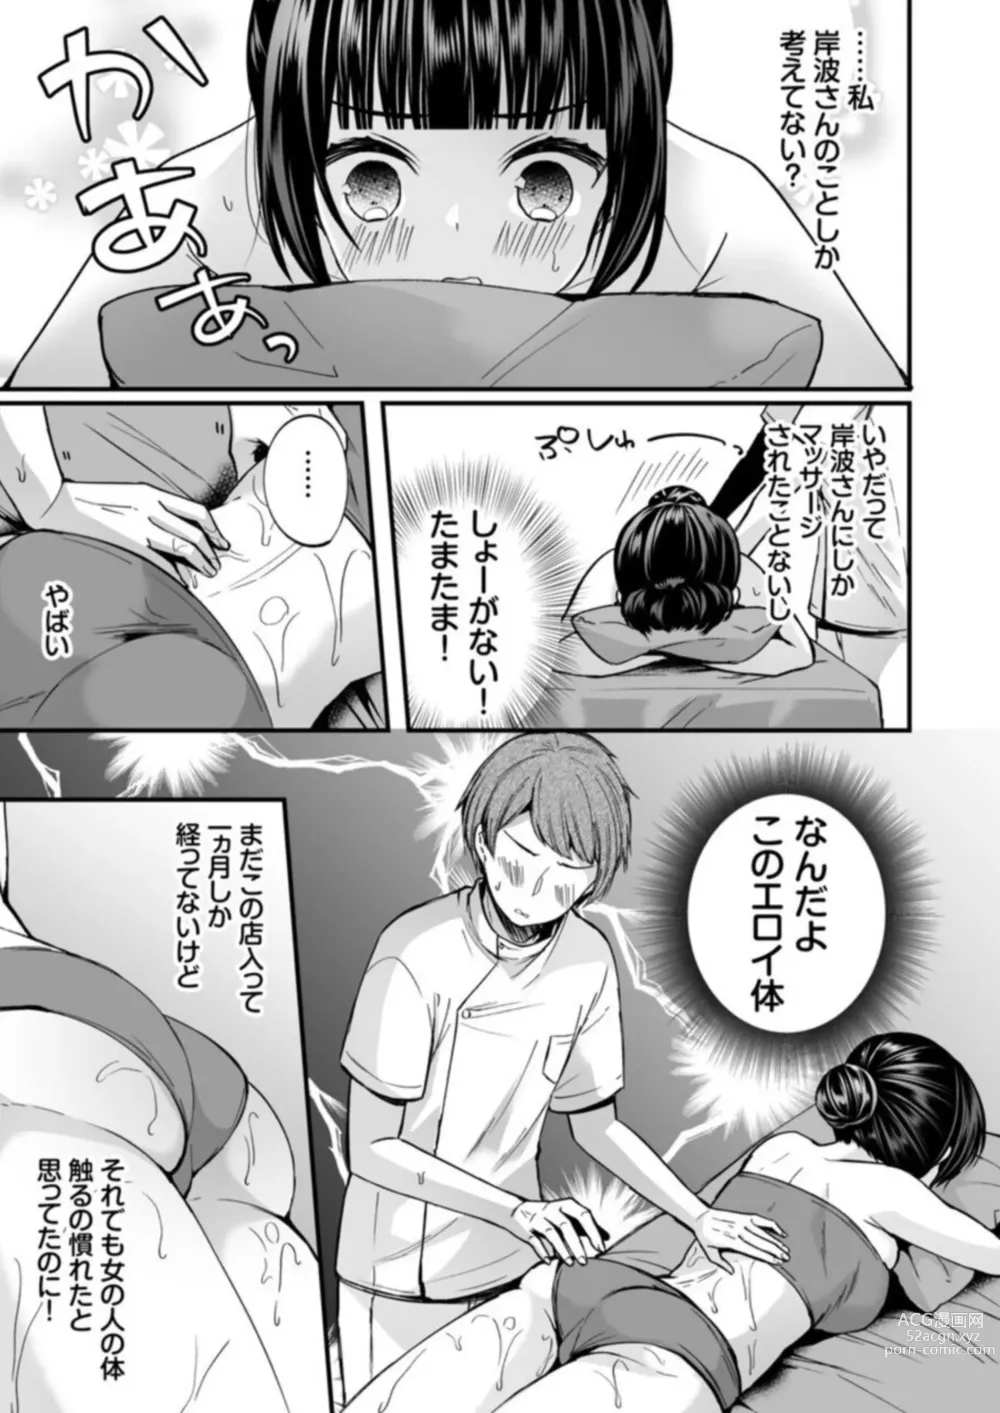 Page 9 of manga Ikasaresugite Chousa Murii...!